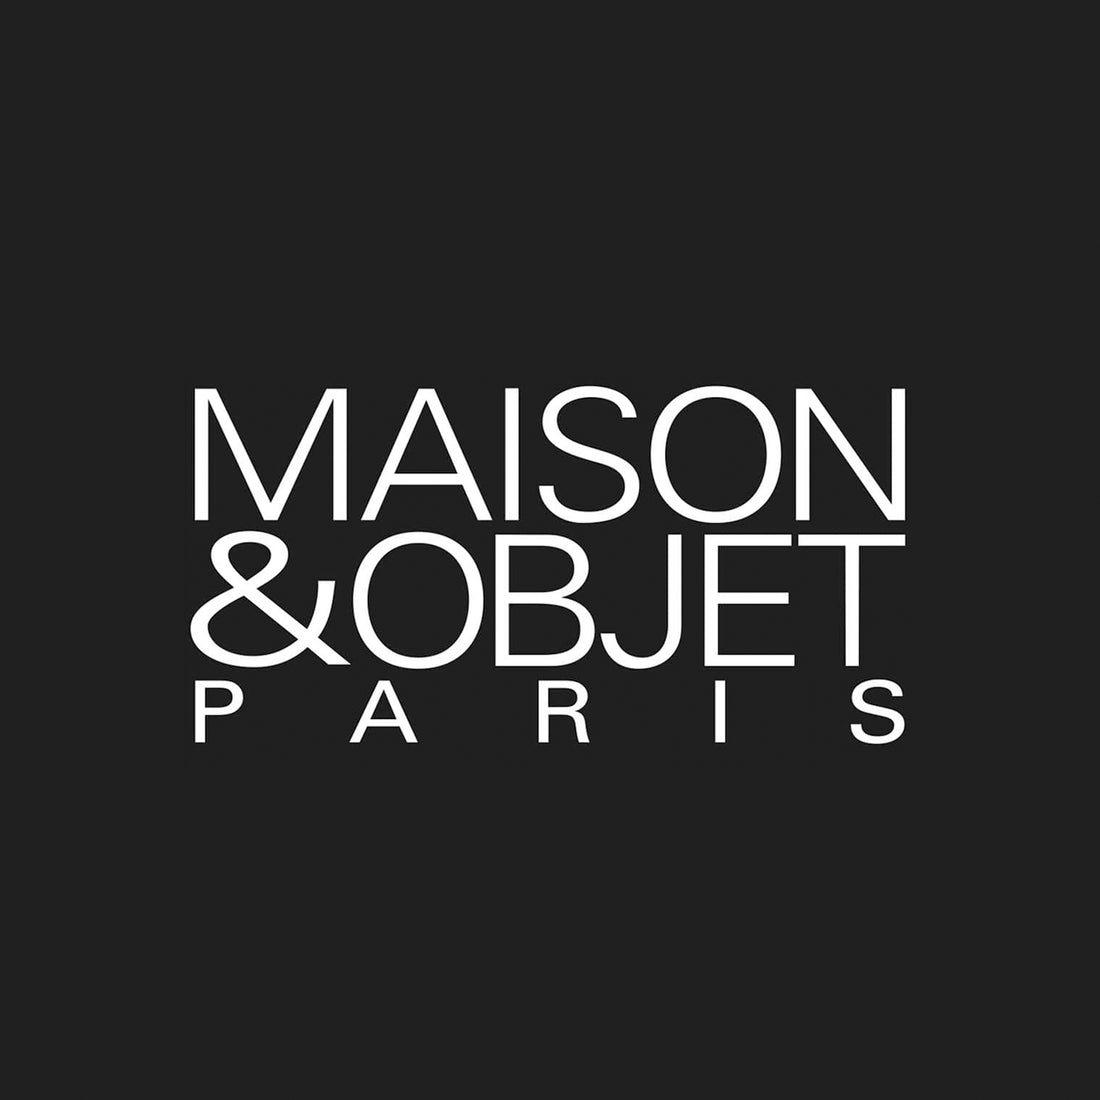 Maison et Object PARIS Janvier 2019 出展のお知らせ